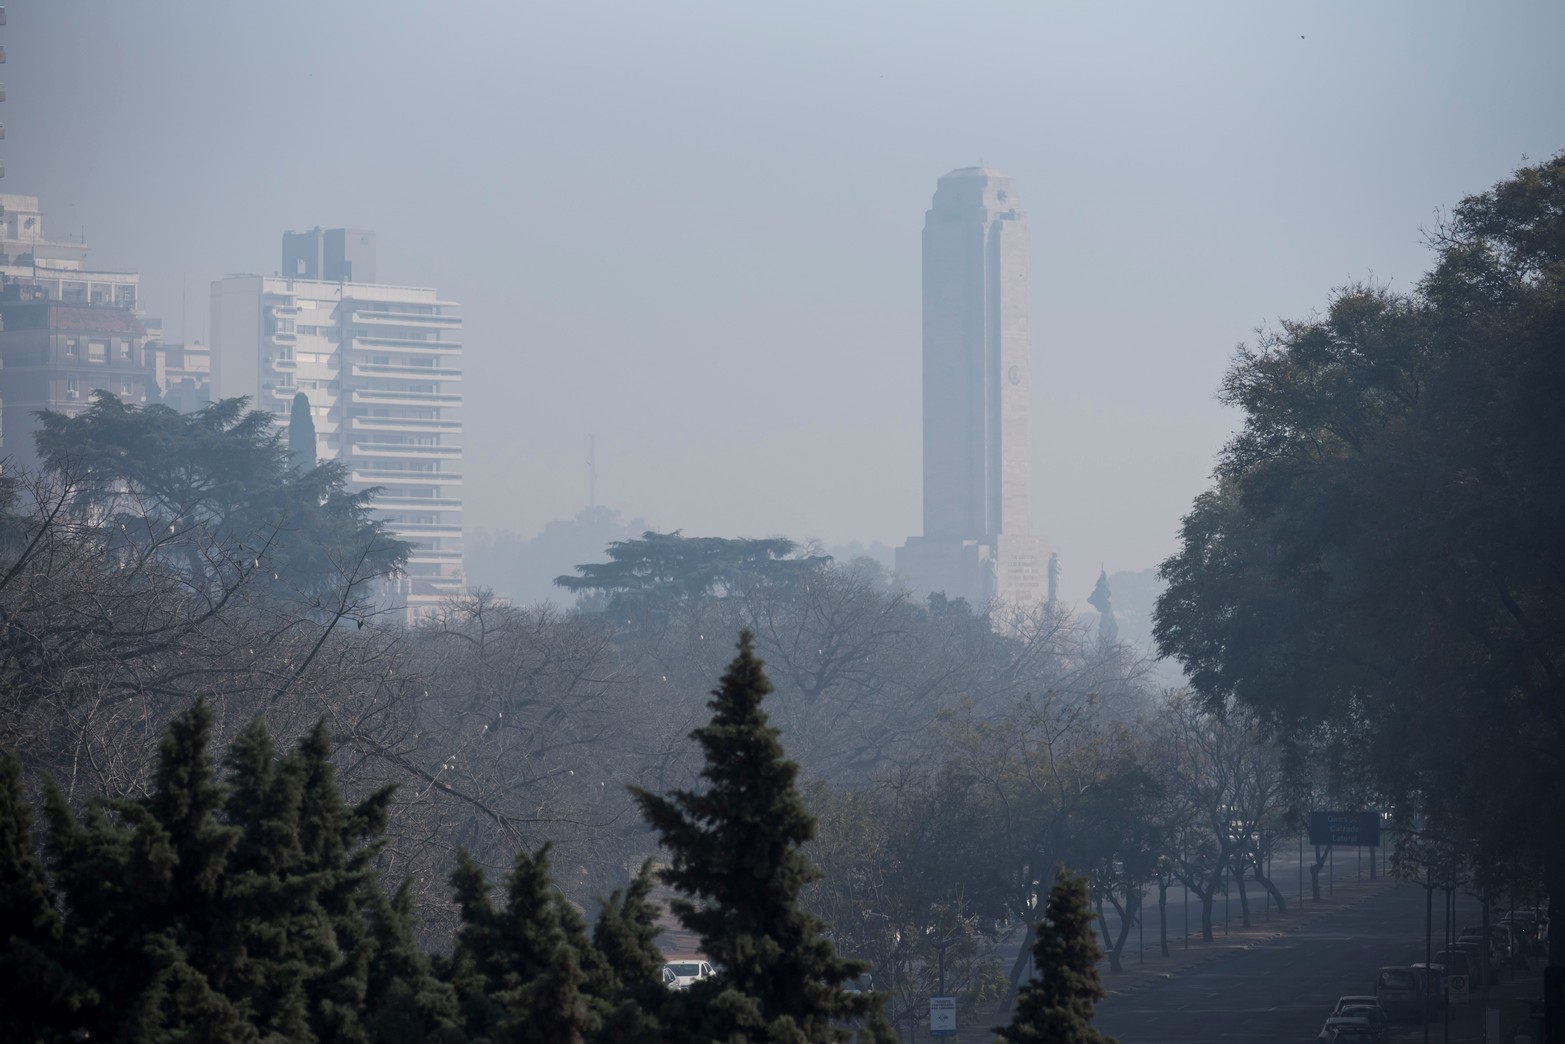 El humo lleva tres días cubriendo la ciudad. Desde el lunes a la madrugada comenzó a invadir gran parte de la ciudad y la región.